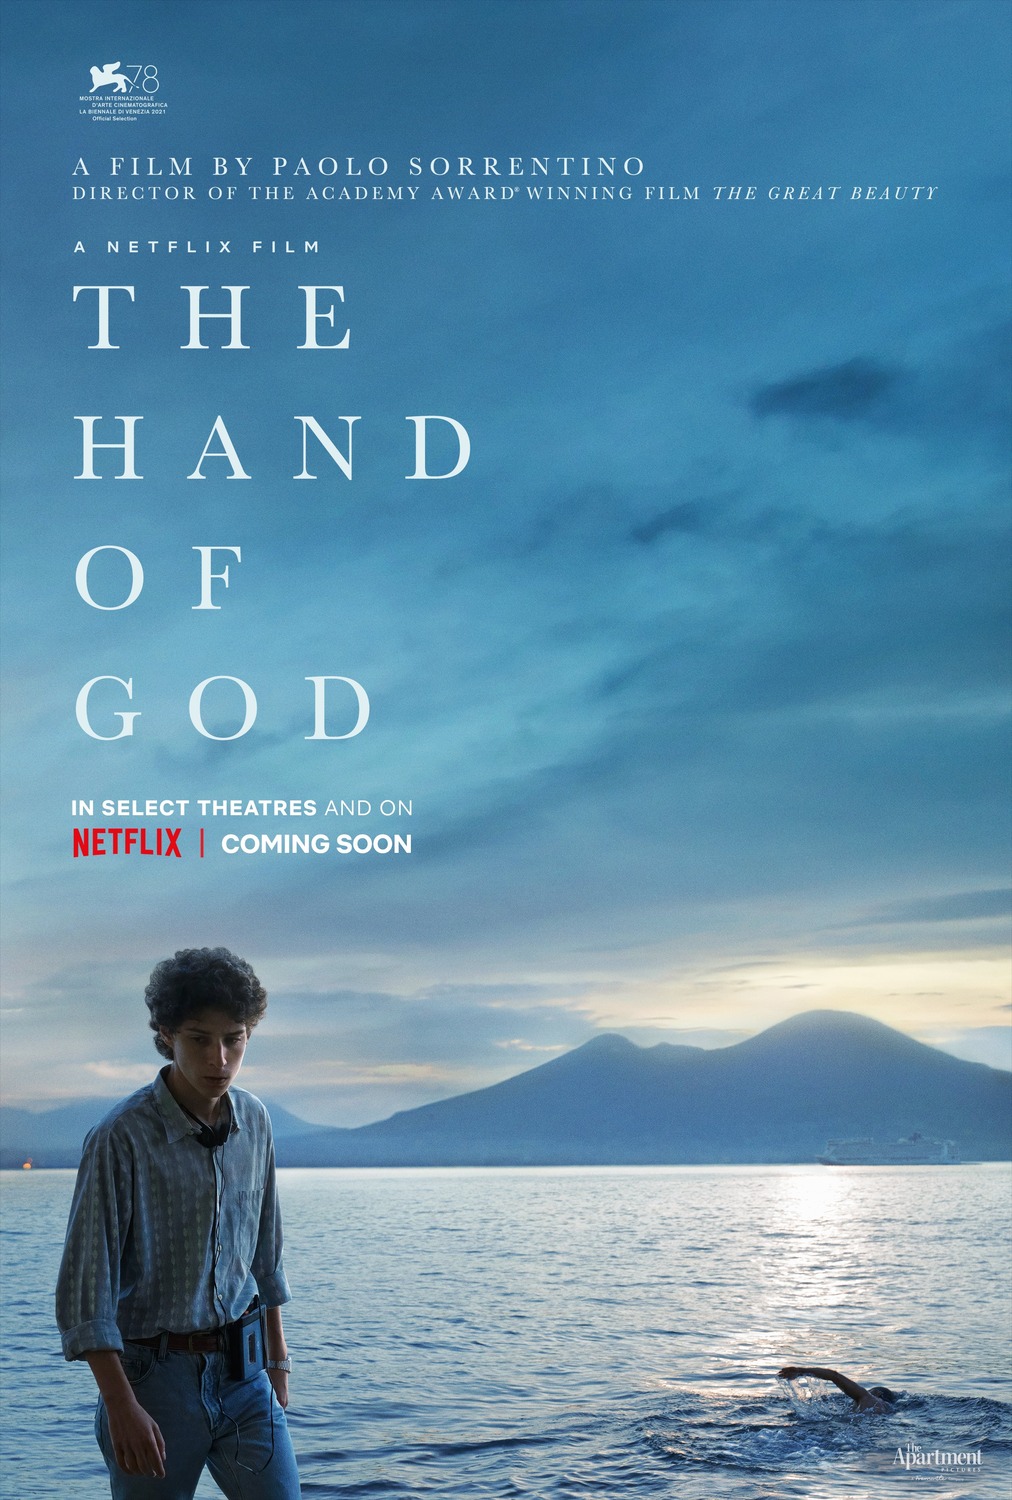 Extra Large Movie Poster Image for È stata la mano di Dio (#1 of 5)